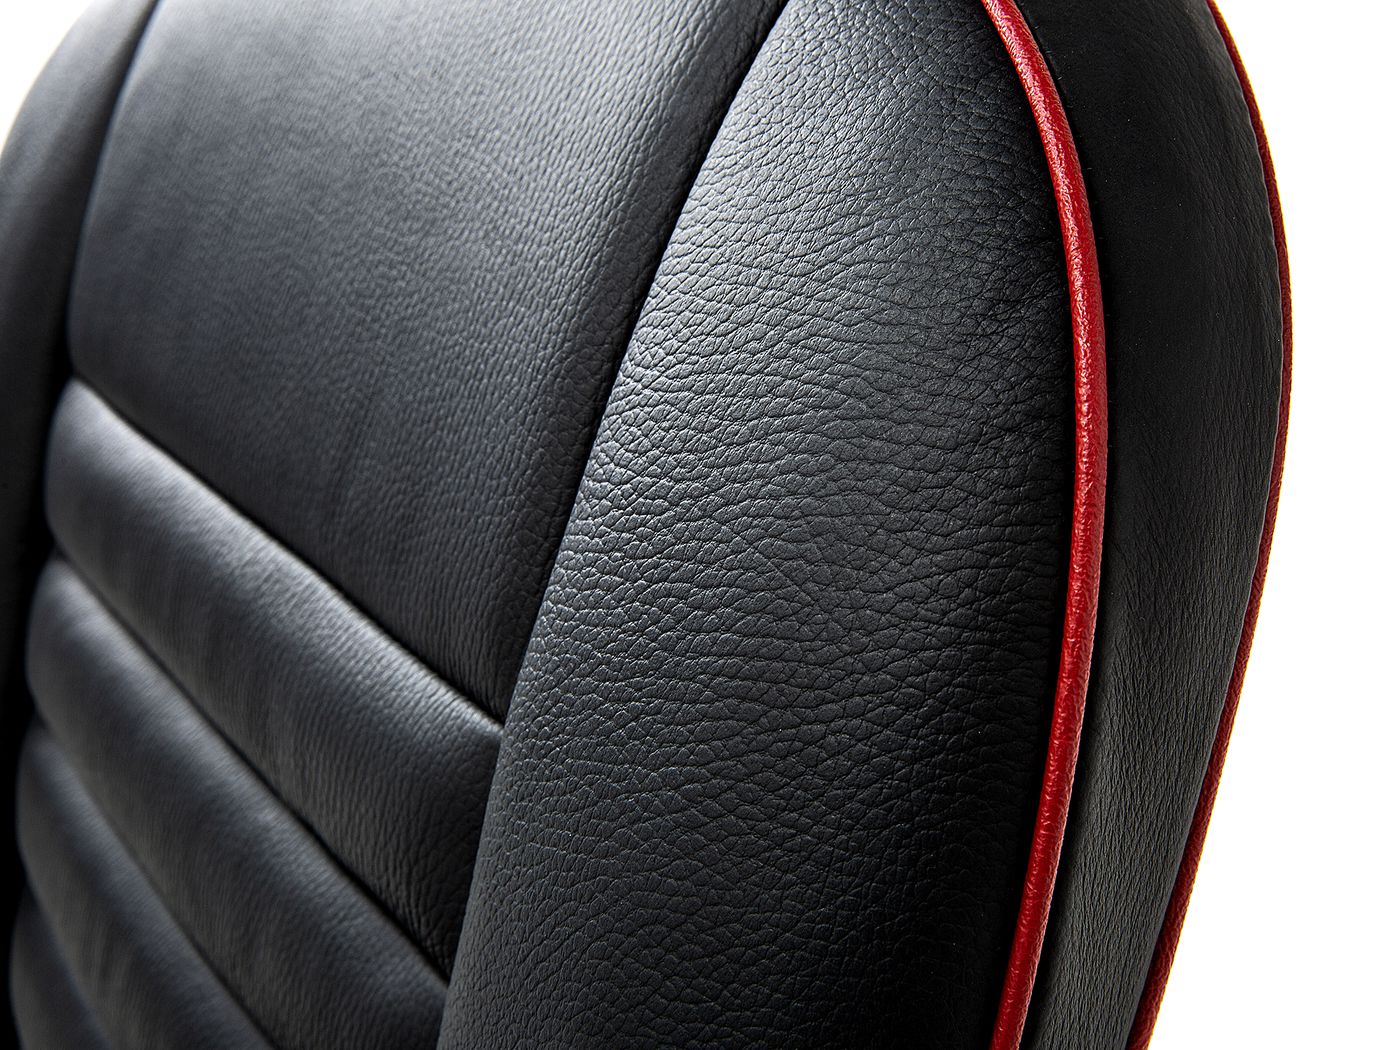 Ledersitze
Leather seats
Sièges en cuir
Siedzenie
Lederen autos